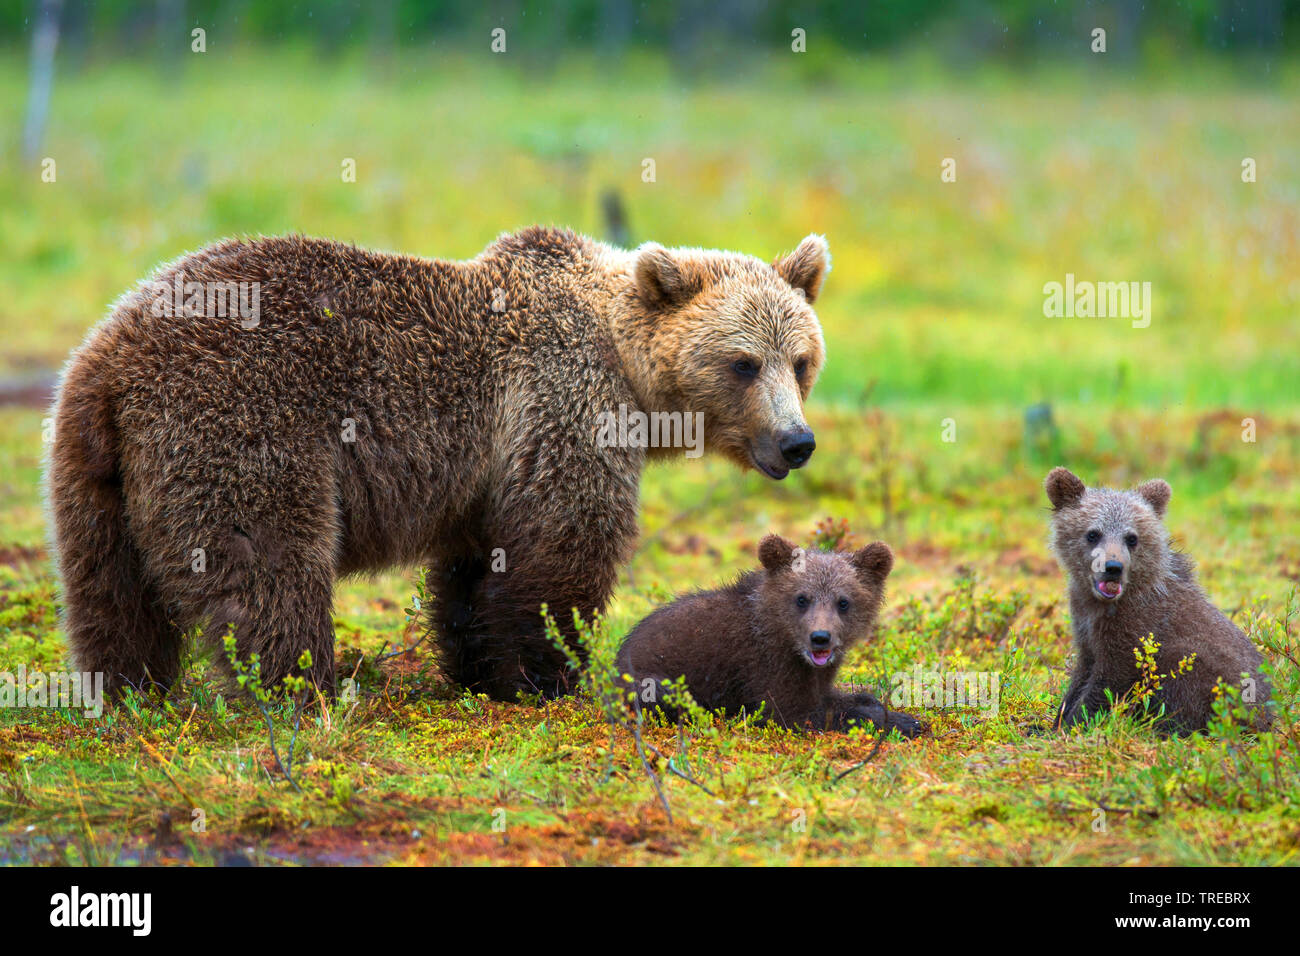 Europäische Braunbär (Ursus arctos arctos), Braun bearess mit zwei junge Tiere in einer Wiese, Finnland Stockfoto